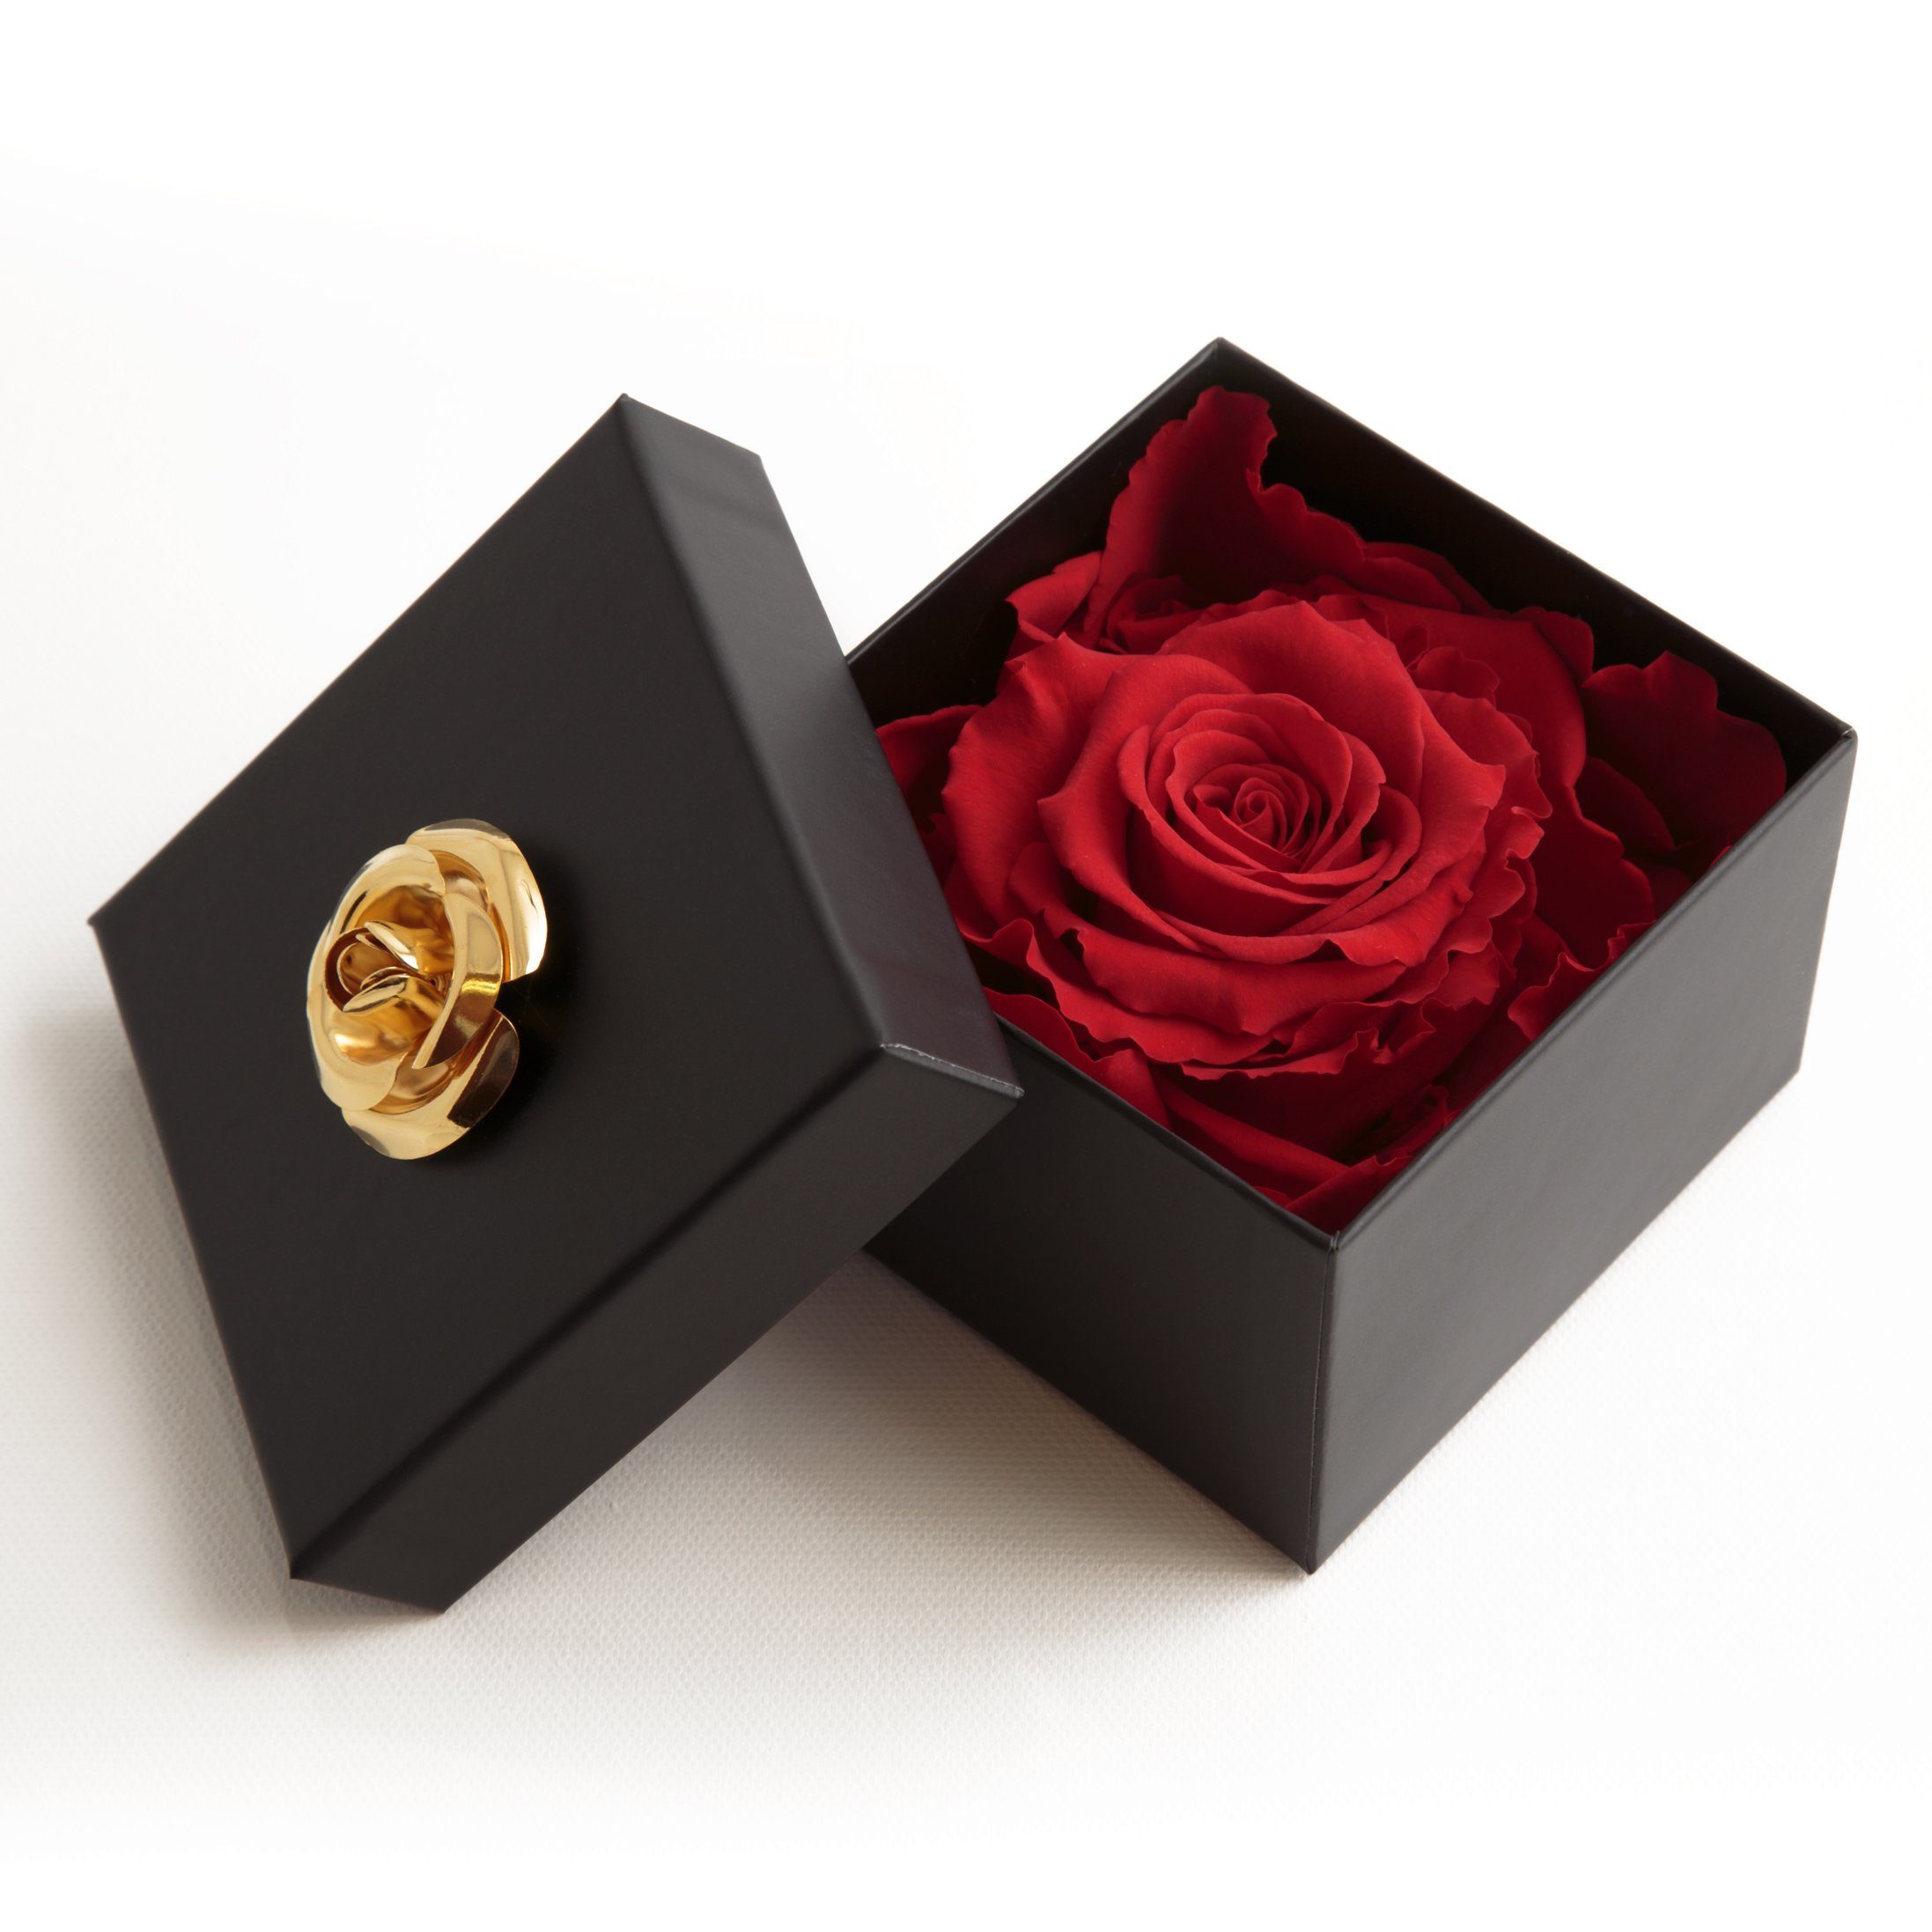 SCHULZ mit Heidelberg, Echte Blumendeckel ROSEMARIE Kunstblume haltbar zu Jahre Rose, 1 cm, 3 Infinity 3 6.5 Höhe Rose Box Rose haltbar rot in bis Rose Jahre